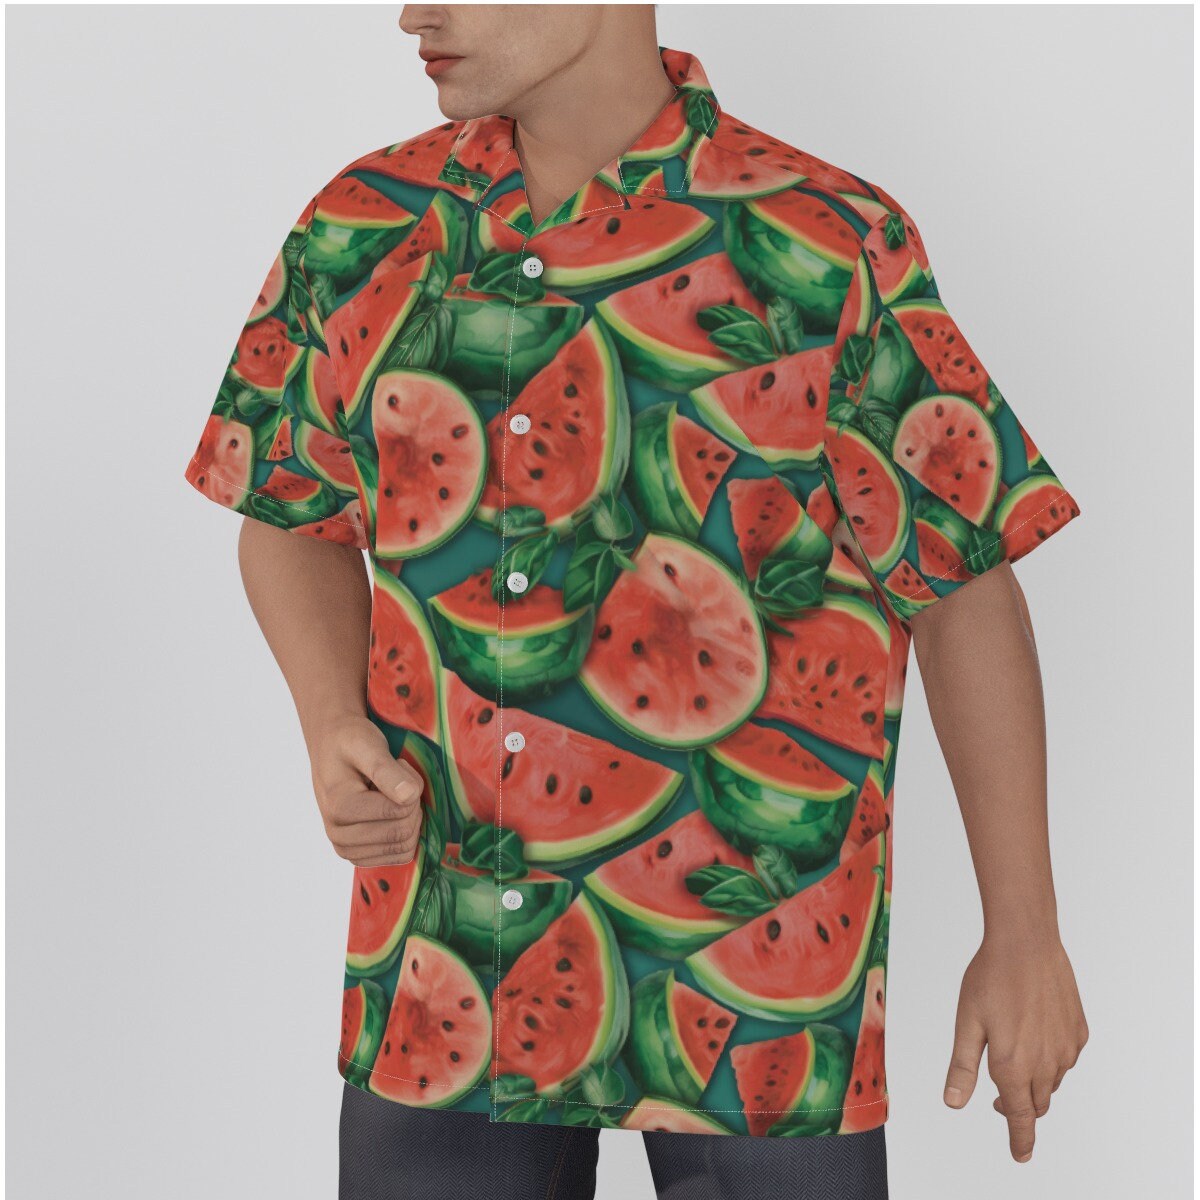 Watermelon Season Hawaiian Shirt, Watermelon Shirt, Watermelon Fashion, Sweet Summer Melon Clothing, Watermelon Season Shirt, Watermelon Top